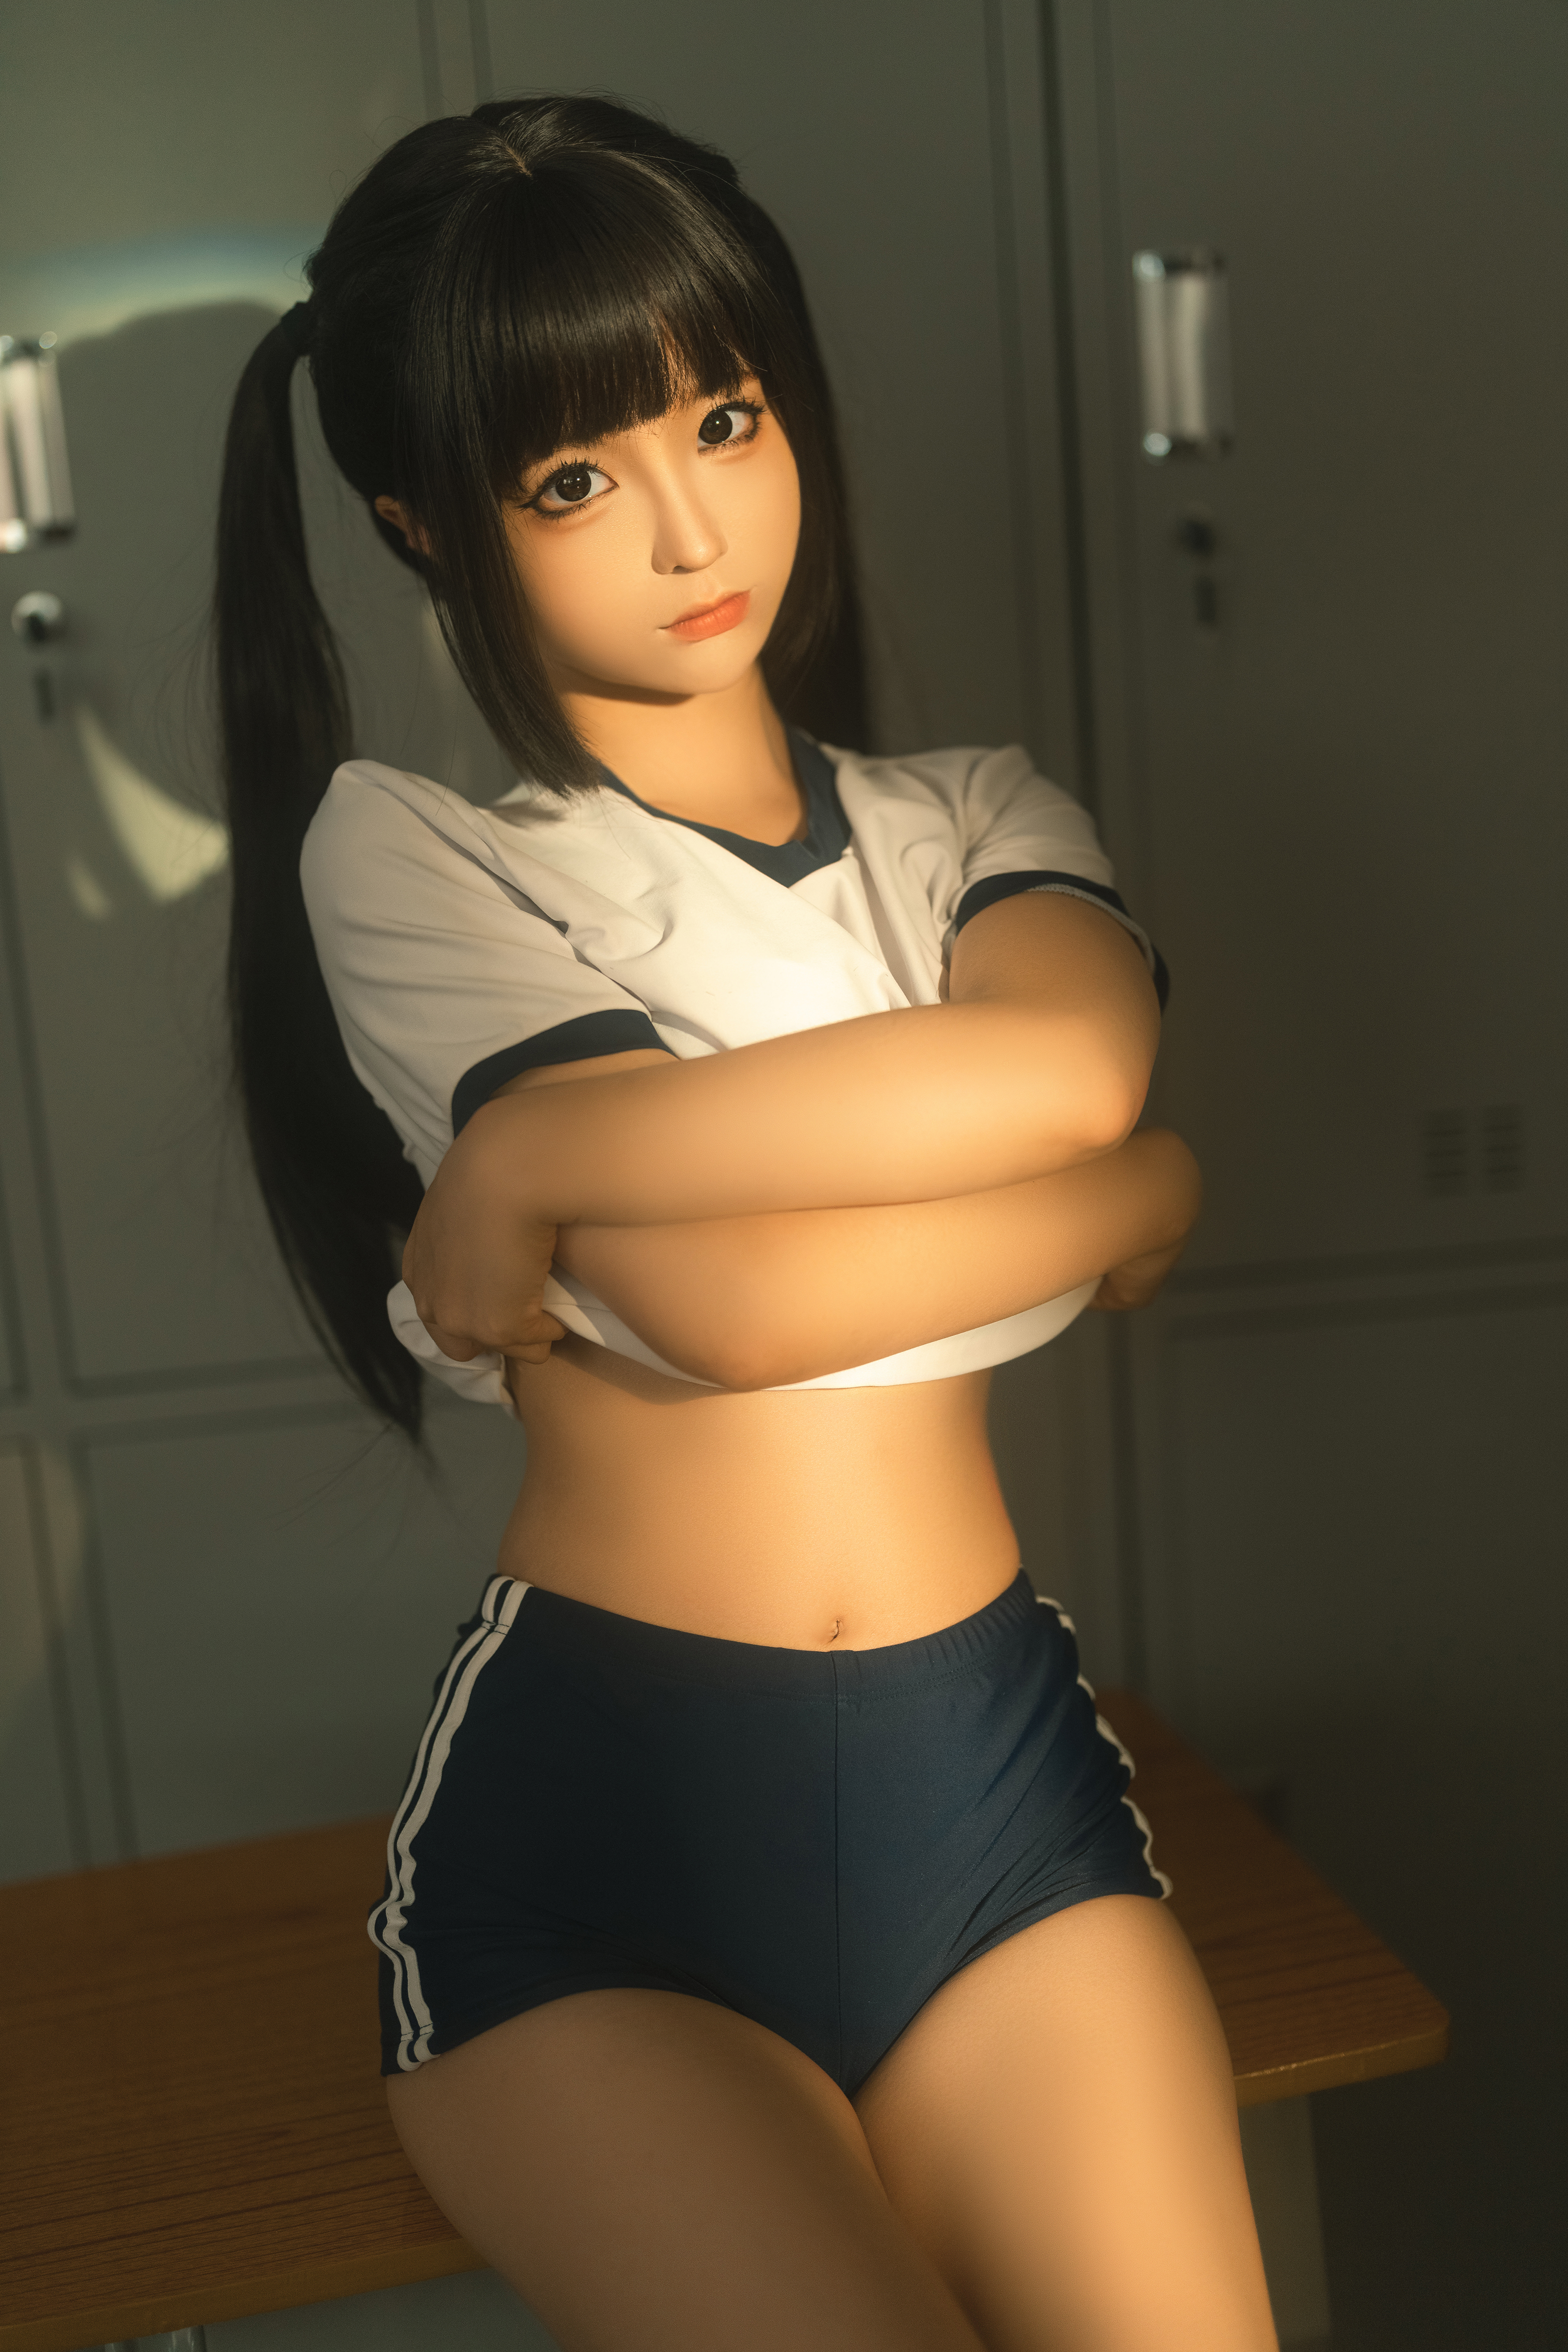 Women Model Asian Twintails Classroom Women Indoors Schoolgirl T Shirt White Tops 3200x4800